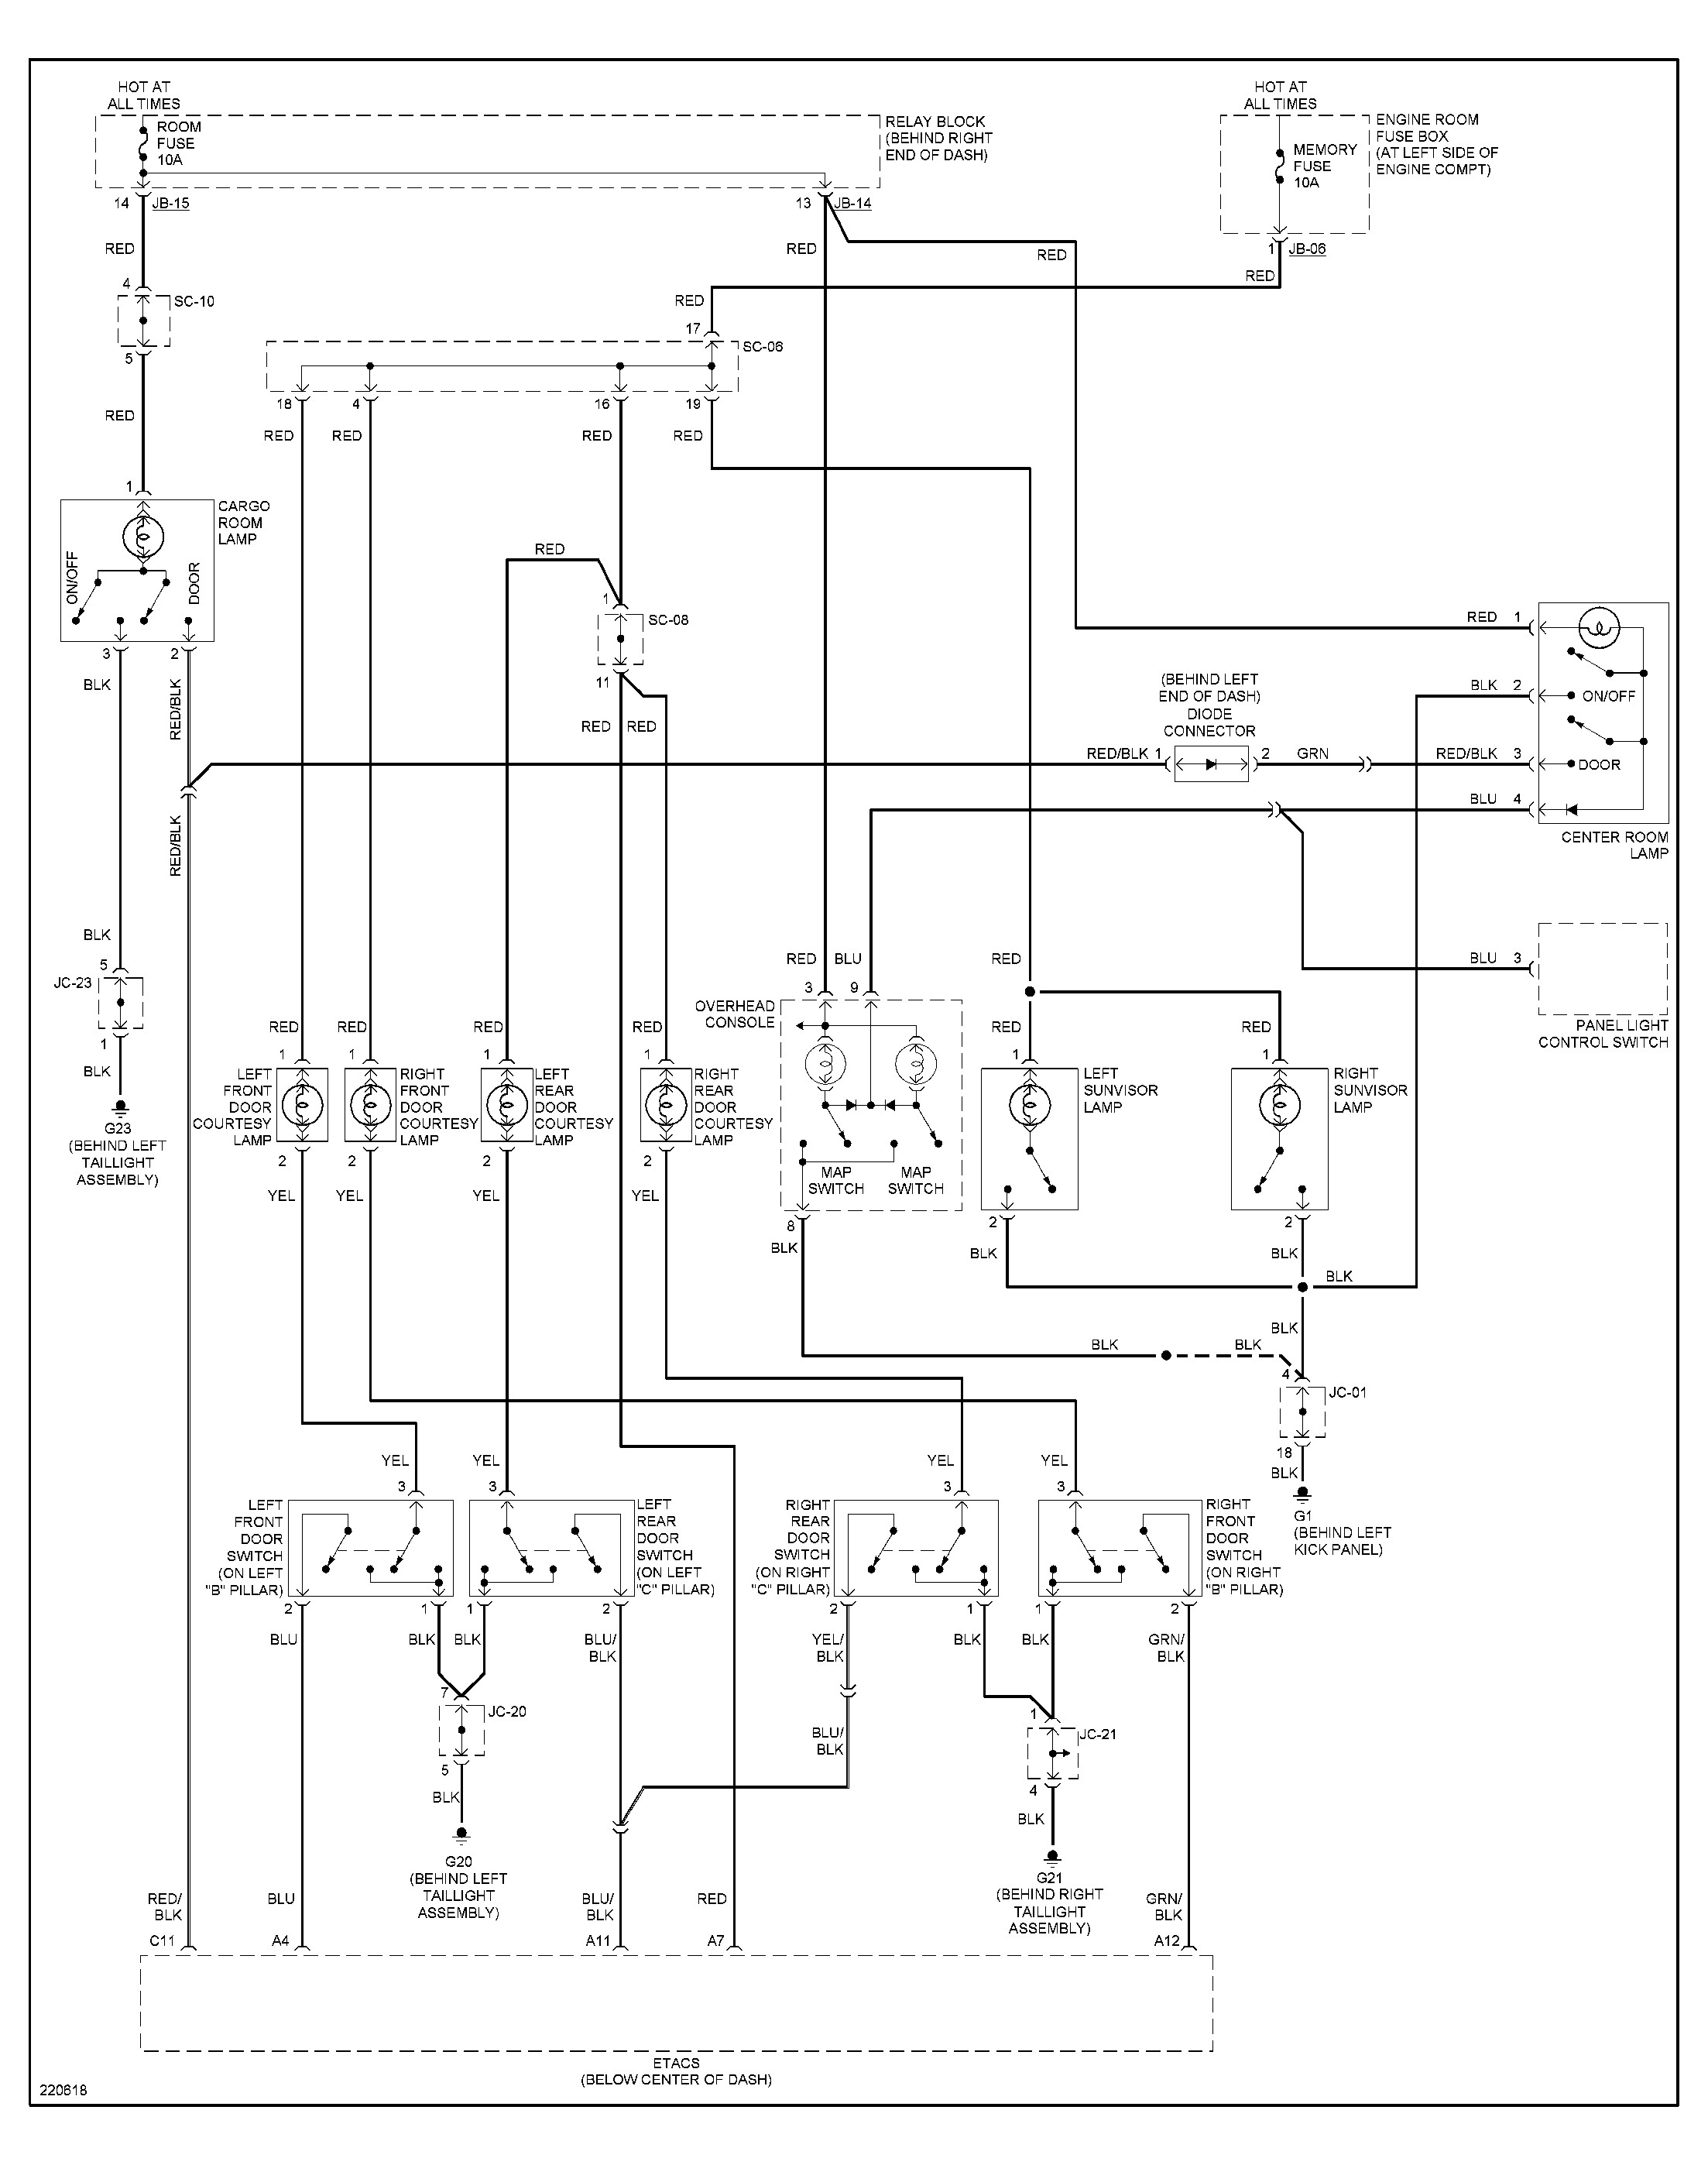 2003 Kia Rio Engine Diagram Amazing Kia Sportage Wiring Diagram Ideas Everything You Need to